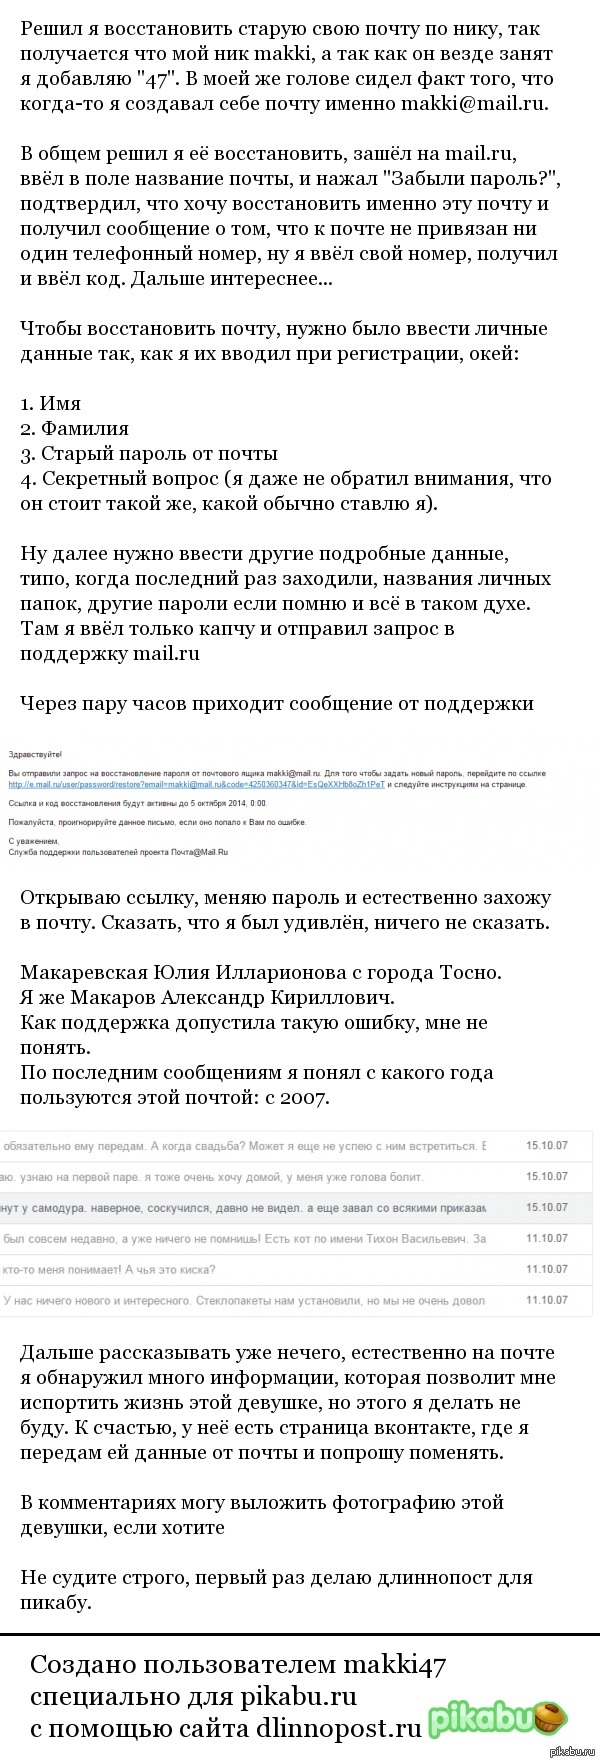 Техническая Поддержка Mail.ru, или как я восстанавливал почту после взлома.. – FlamedIce — LiveJournal